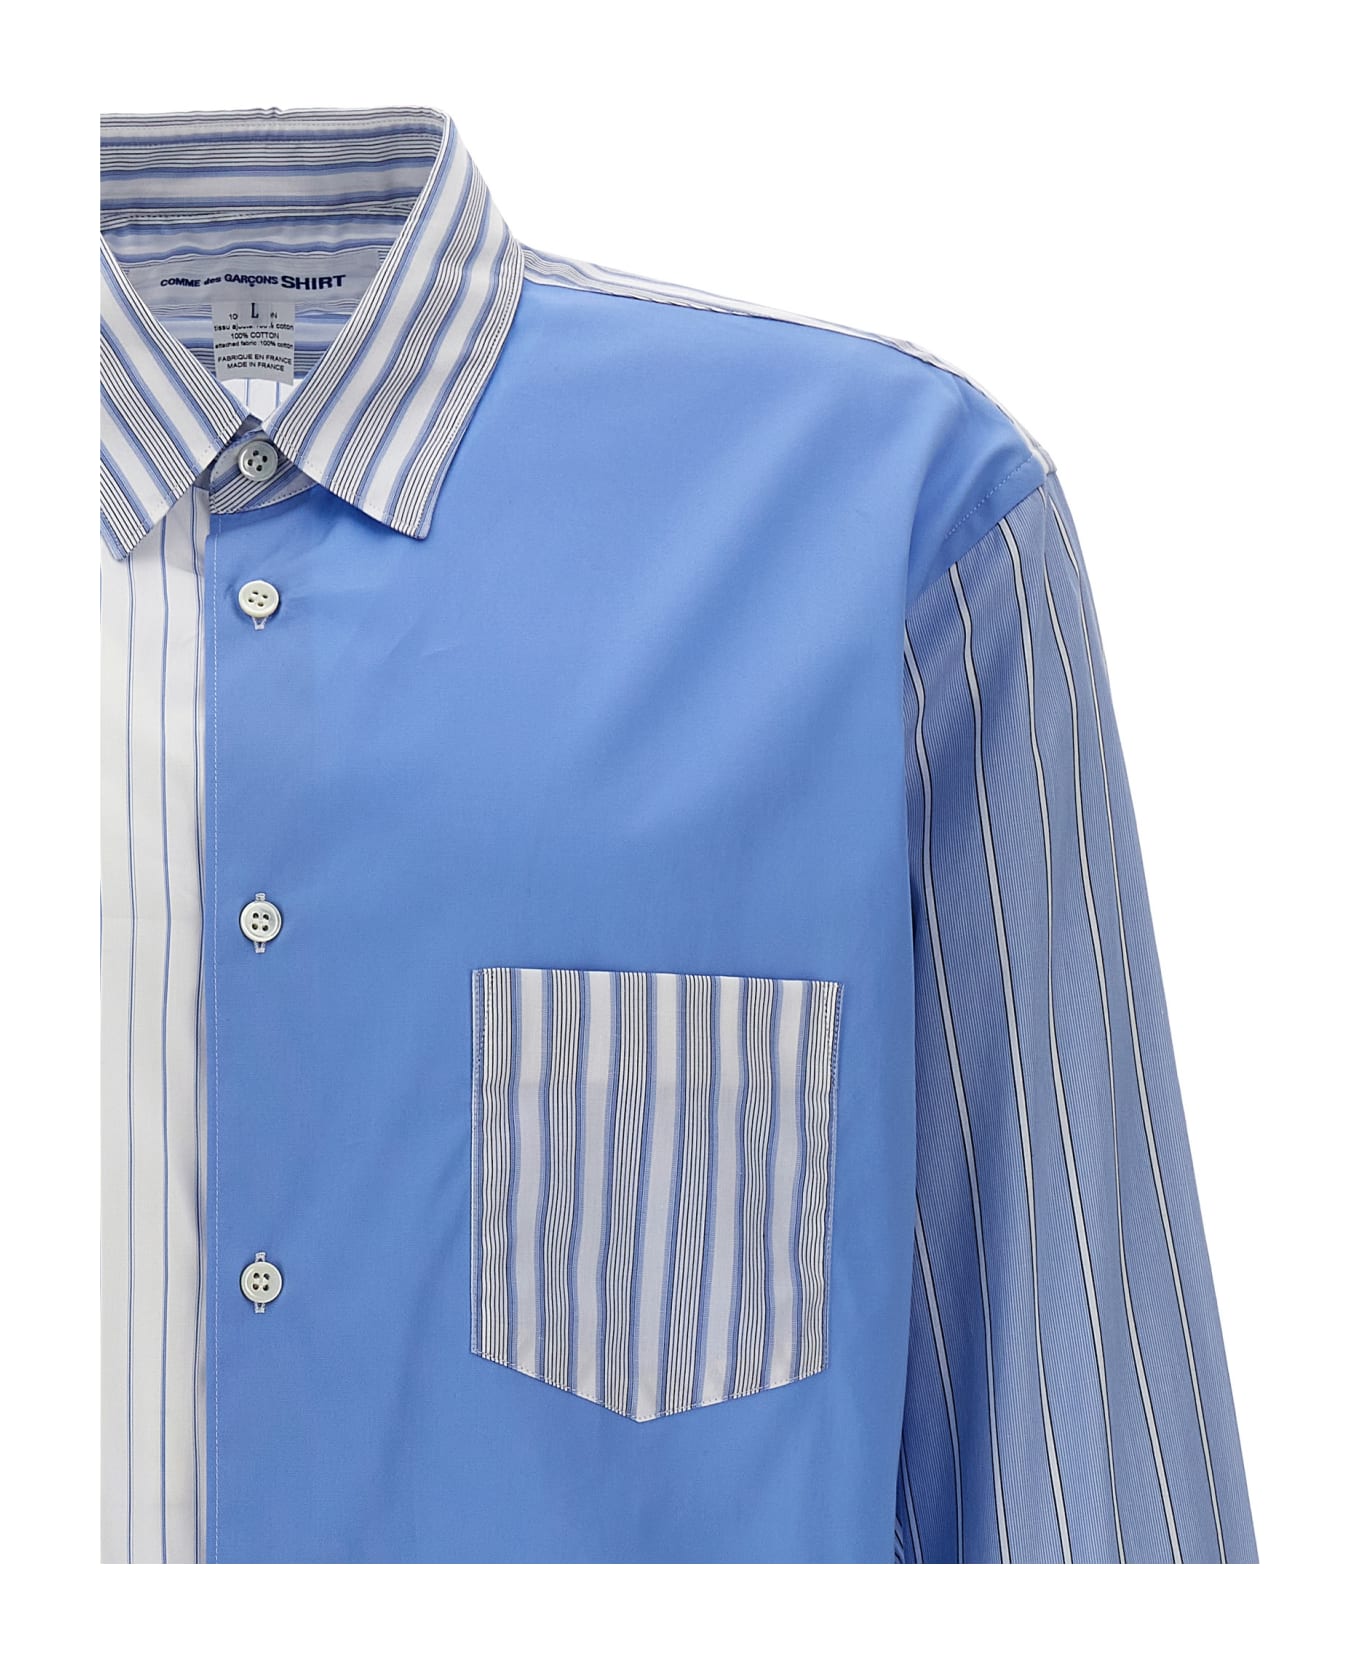 Comme des Garçons Shirt Patchwork Striped Shirt - Light Blue